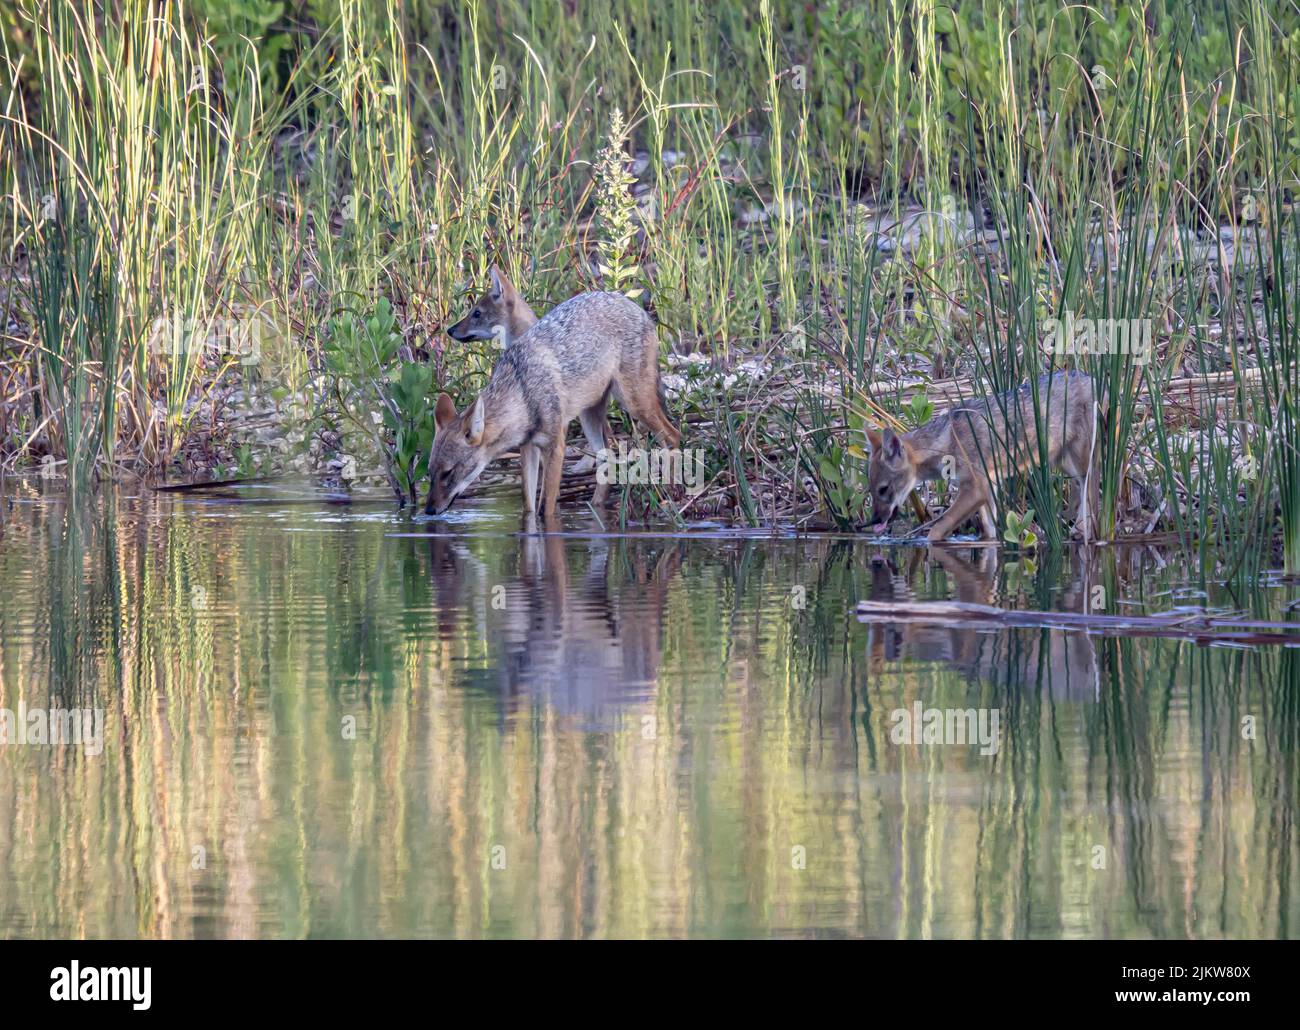 Una confezione di acqua potabile jackal dorata da un fiume tranquillo con riflessi sulla superficie Foto Stock